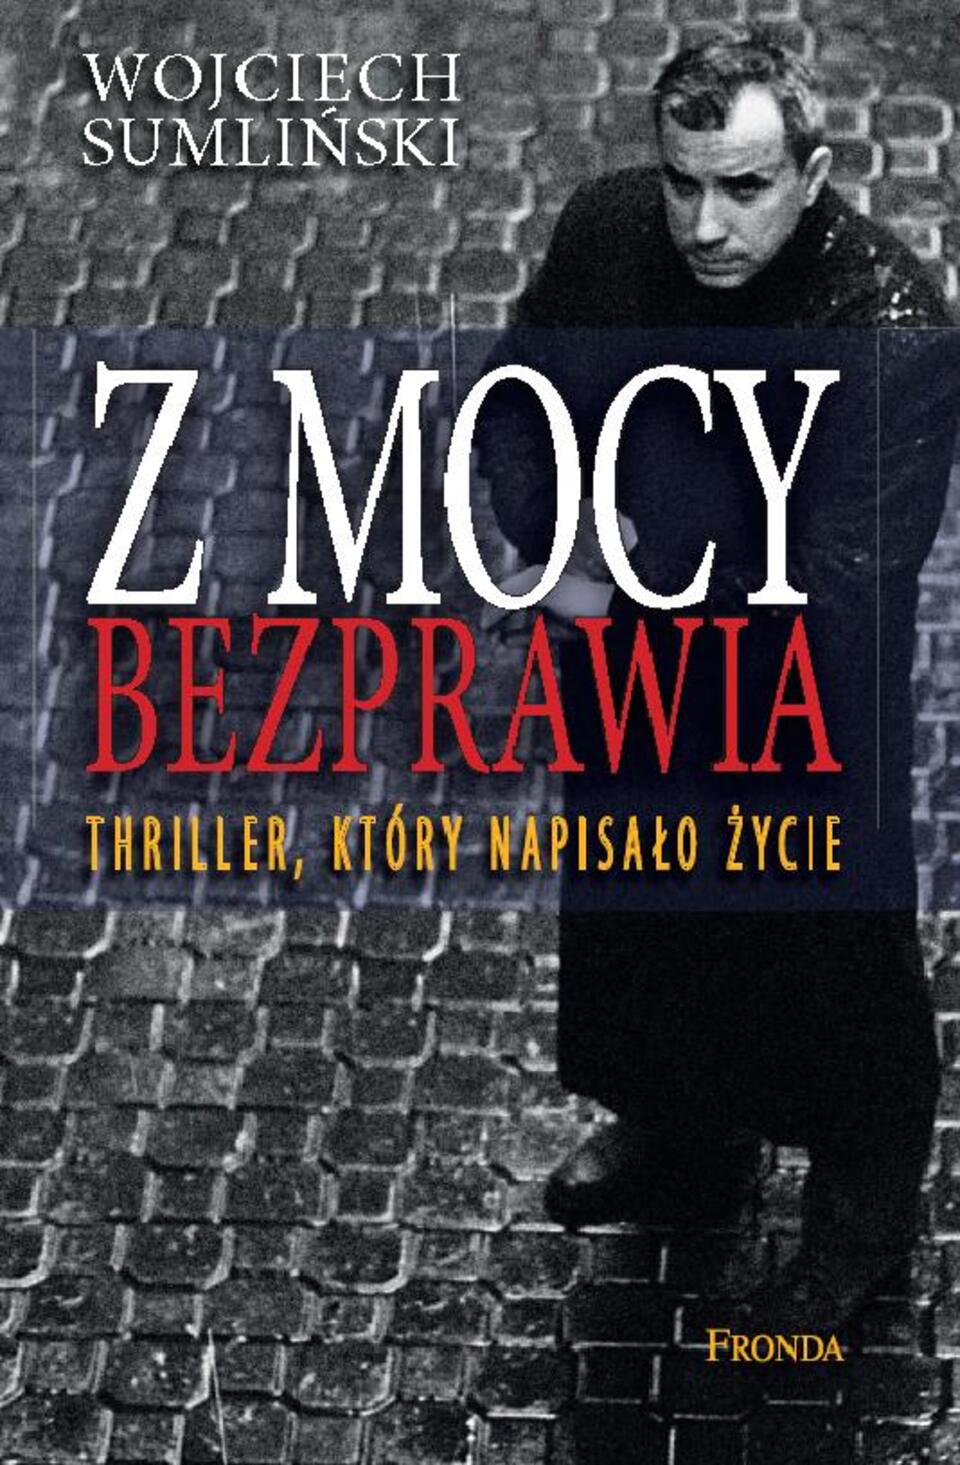 Swoje przejścia Sumliński opisał w wydanej właśnie książce "Z mocy bezprawia". Fot. wPolityce.pl